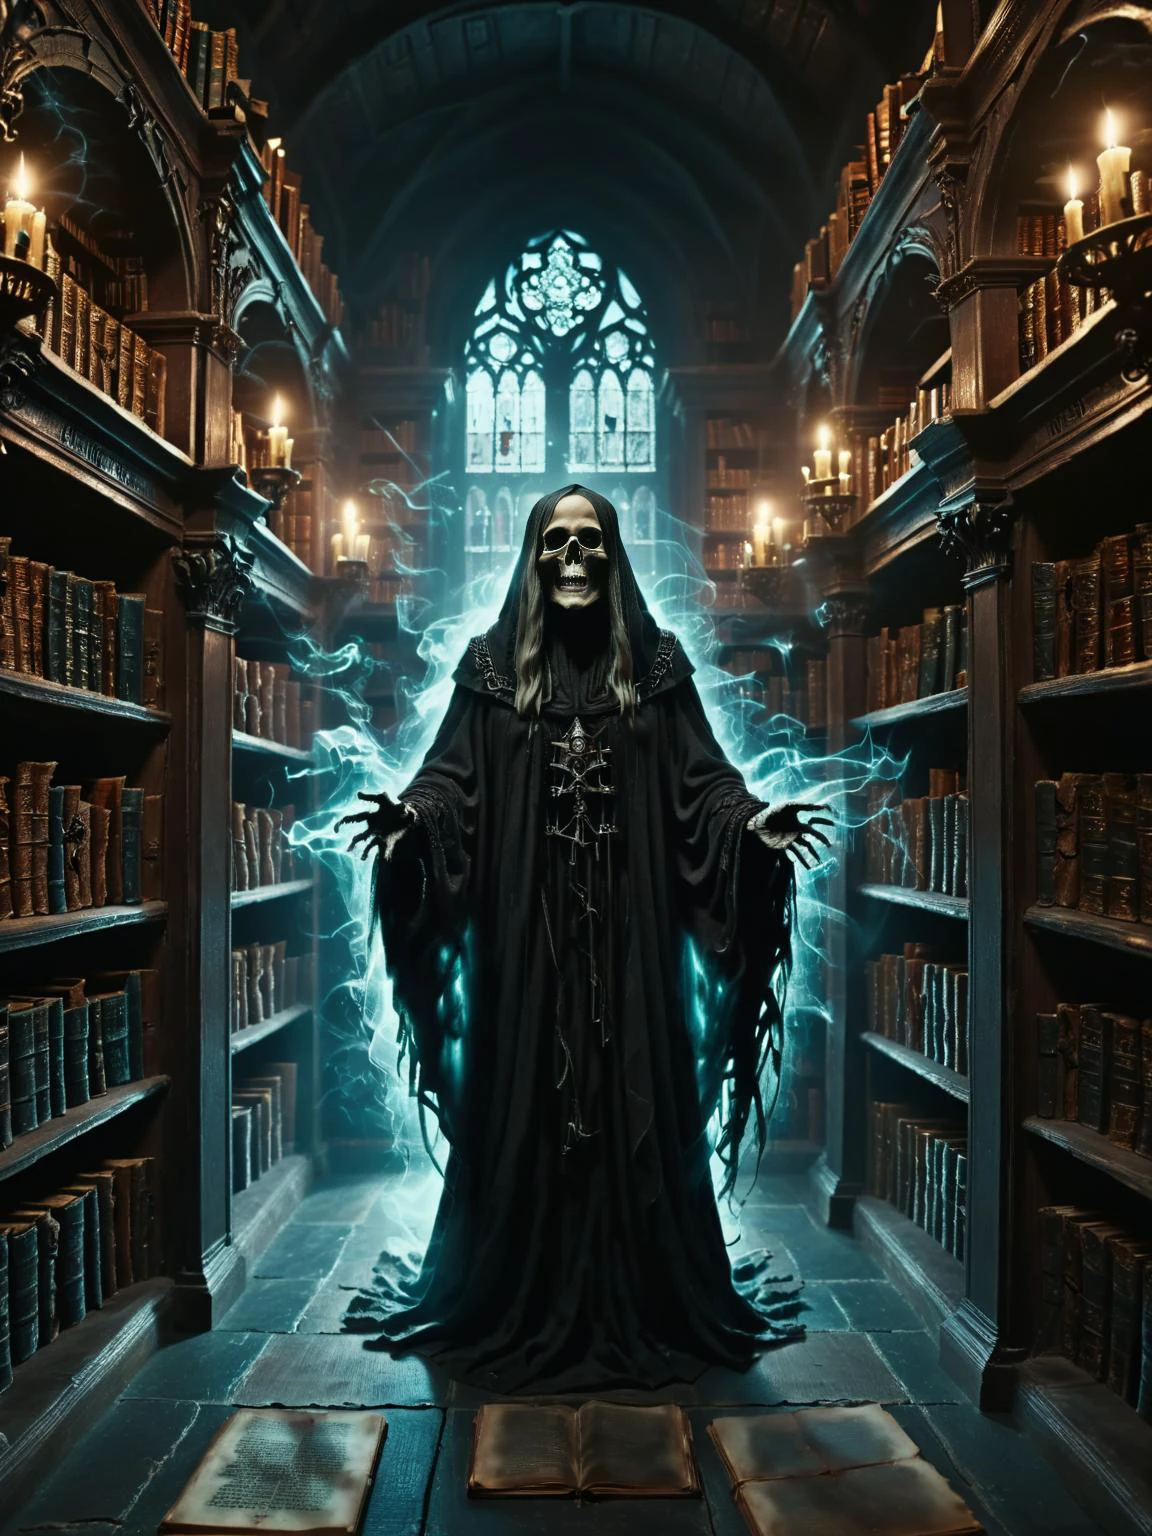 黑暗幻想, ghostlystyle,昏暗的巫师图书馆, 有陈列着古代文物的架子, 禁书, 闪耀着黑暗魔法, 以及潜伏在书堆间的黑影, 電影, 错综复杂, 极其详细, 8千, 超高清,